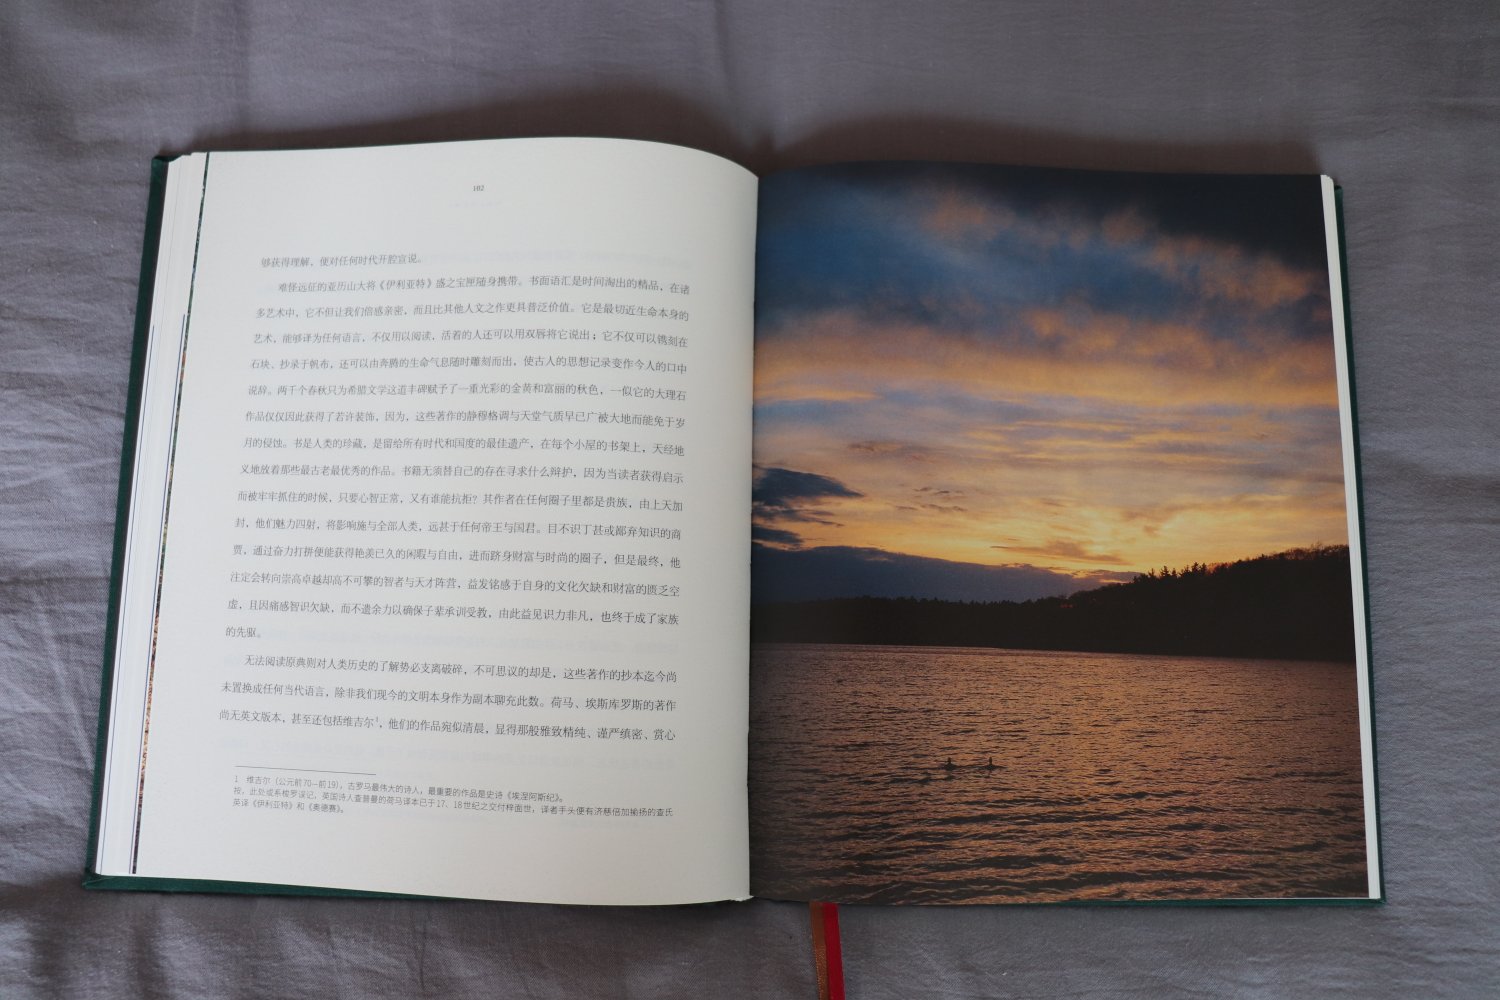 ??译林版12开本精装《瓦尔登湖（纪念版）》不错哦。译者仲泽诗性美文，近百幅高清彩照，布面精装，大开本彩印，完美呈现瓦尔登湖的四季美景、湖光风物，是目前见到的最美的《瓦尔登湖》版本，值得阅读、欣赏、收藏。只是译林出版社的图书以物美价廉著称，现在也走高大上路线了。